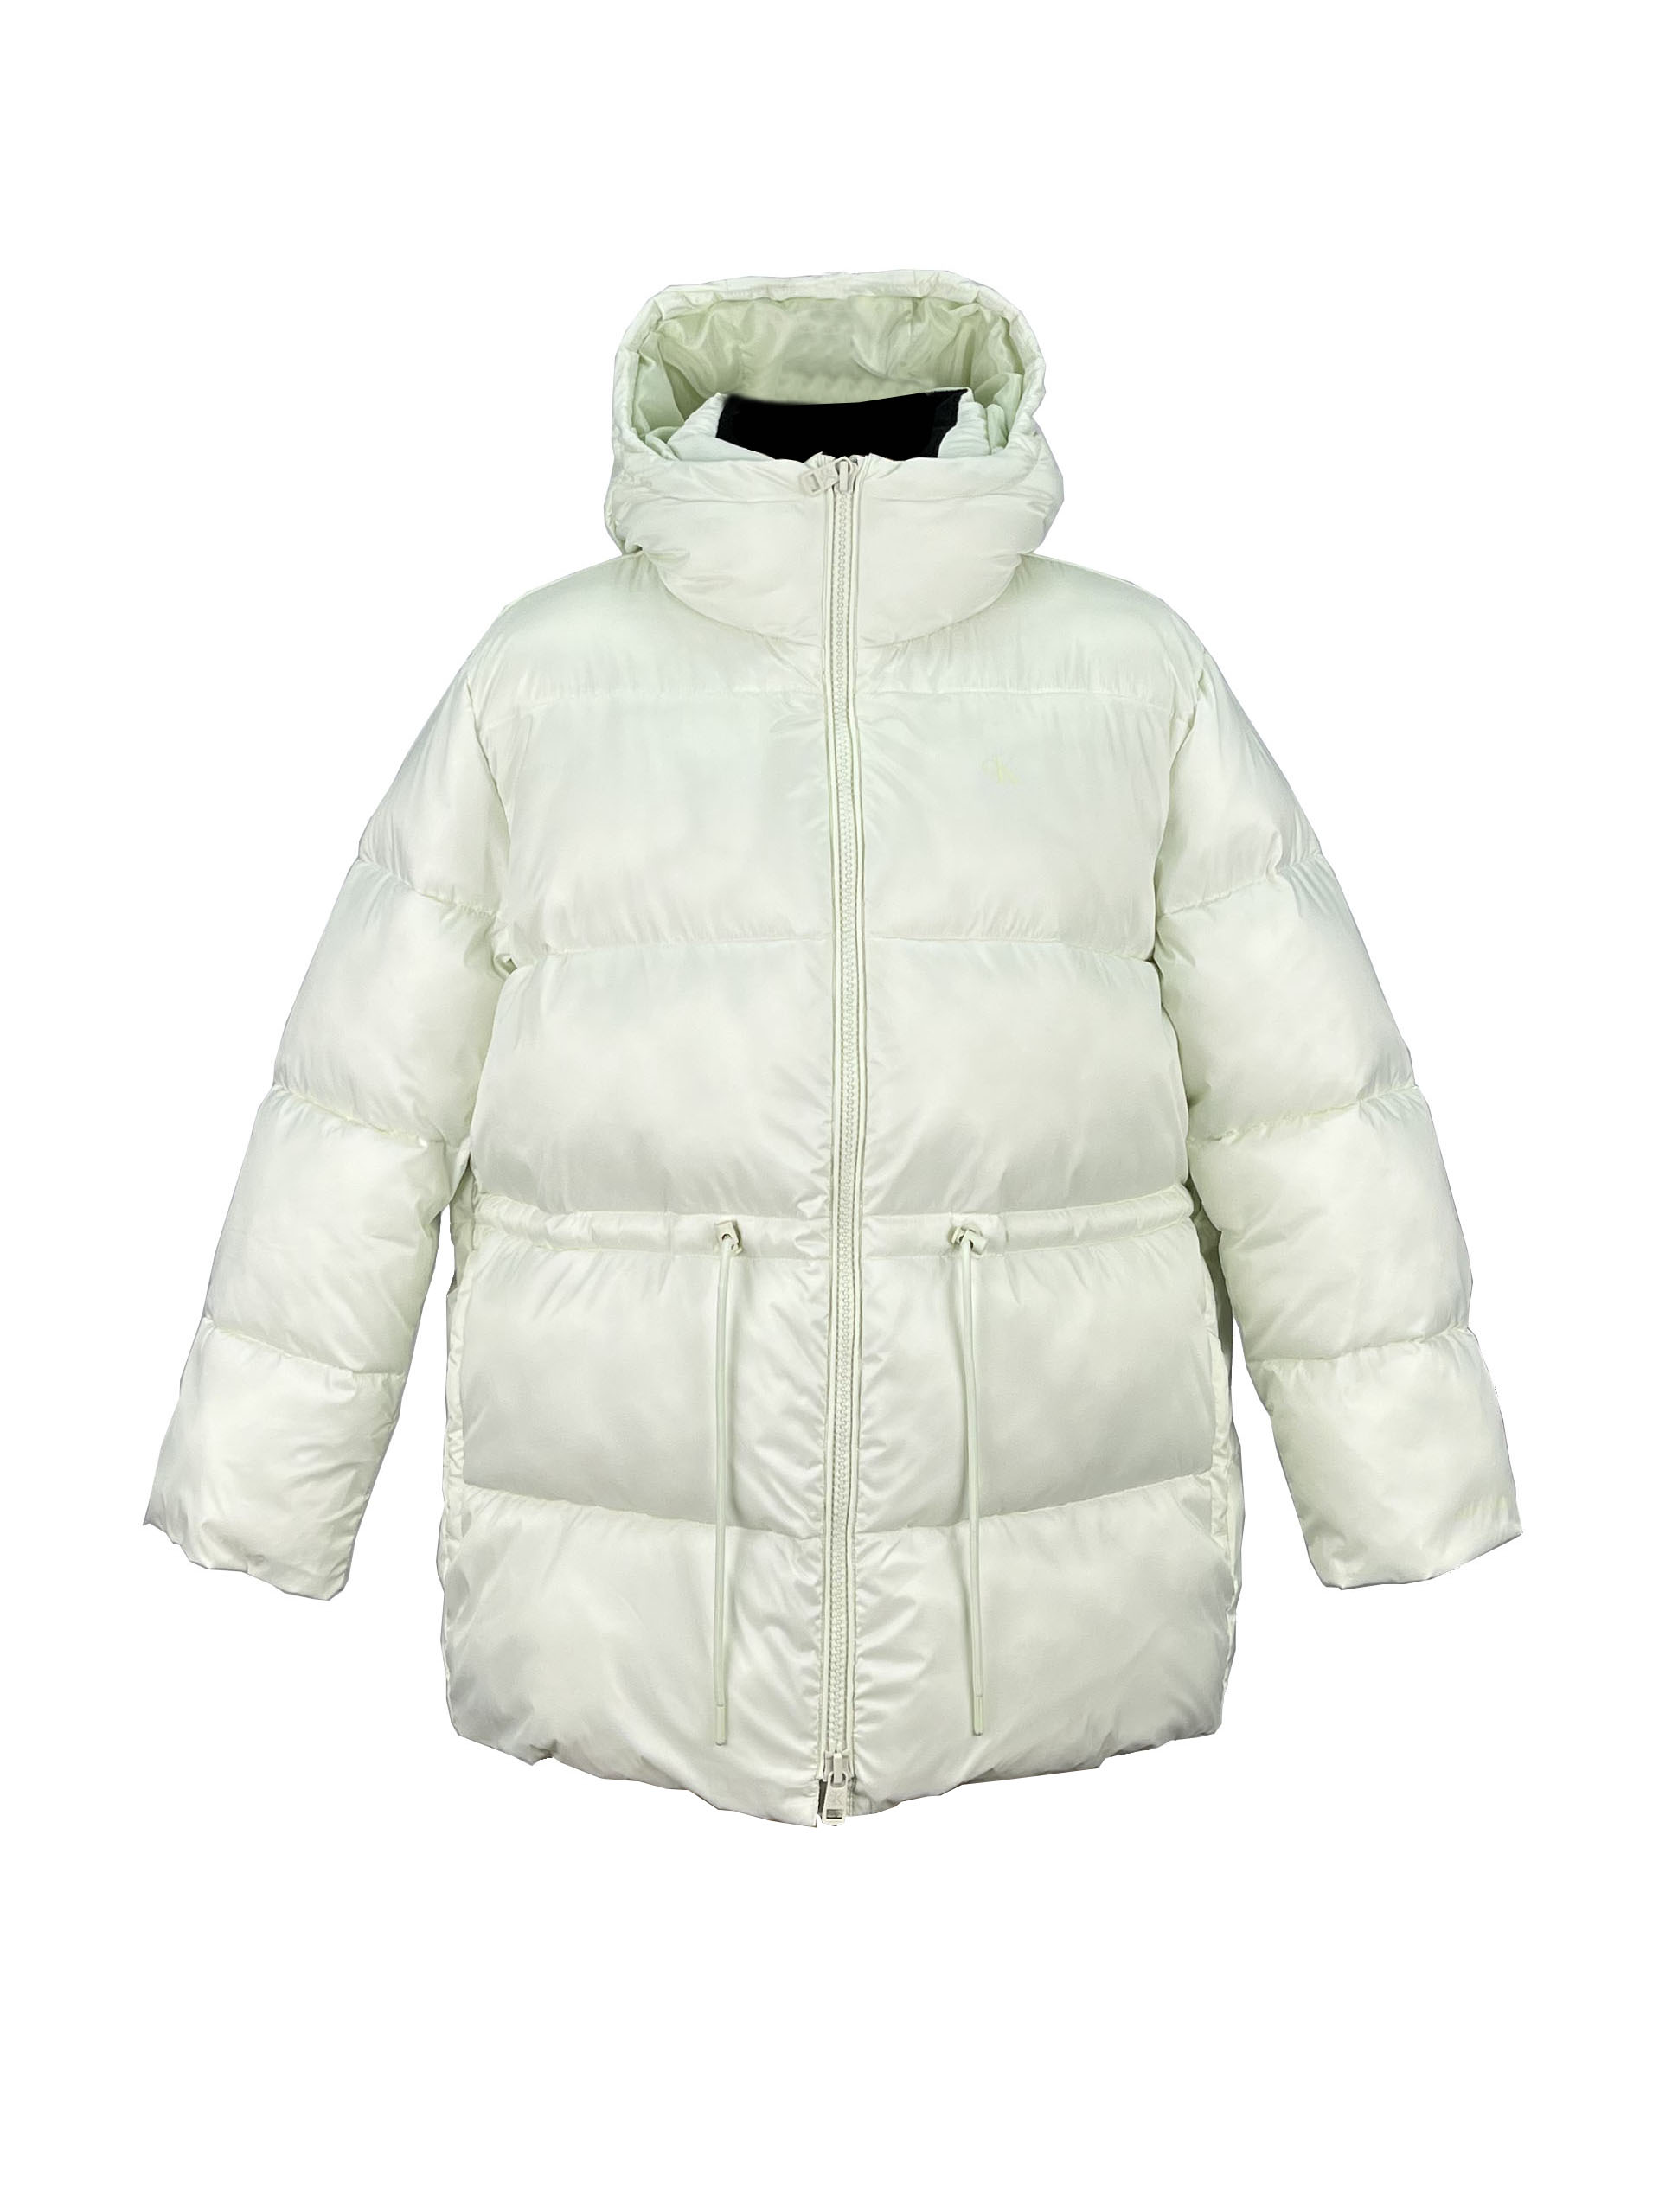 1.padded jacket (1)